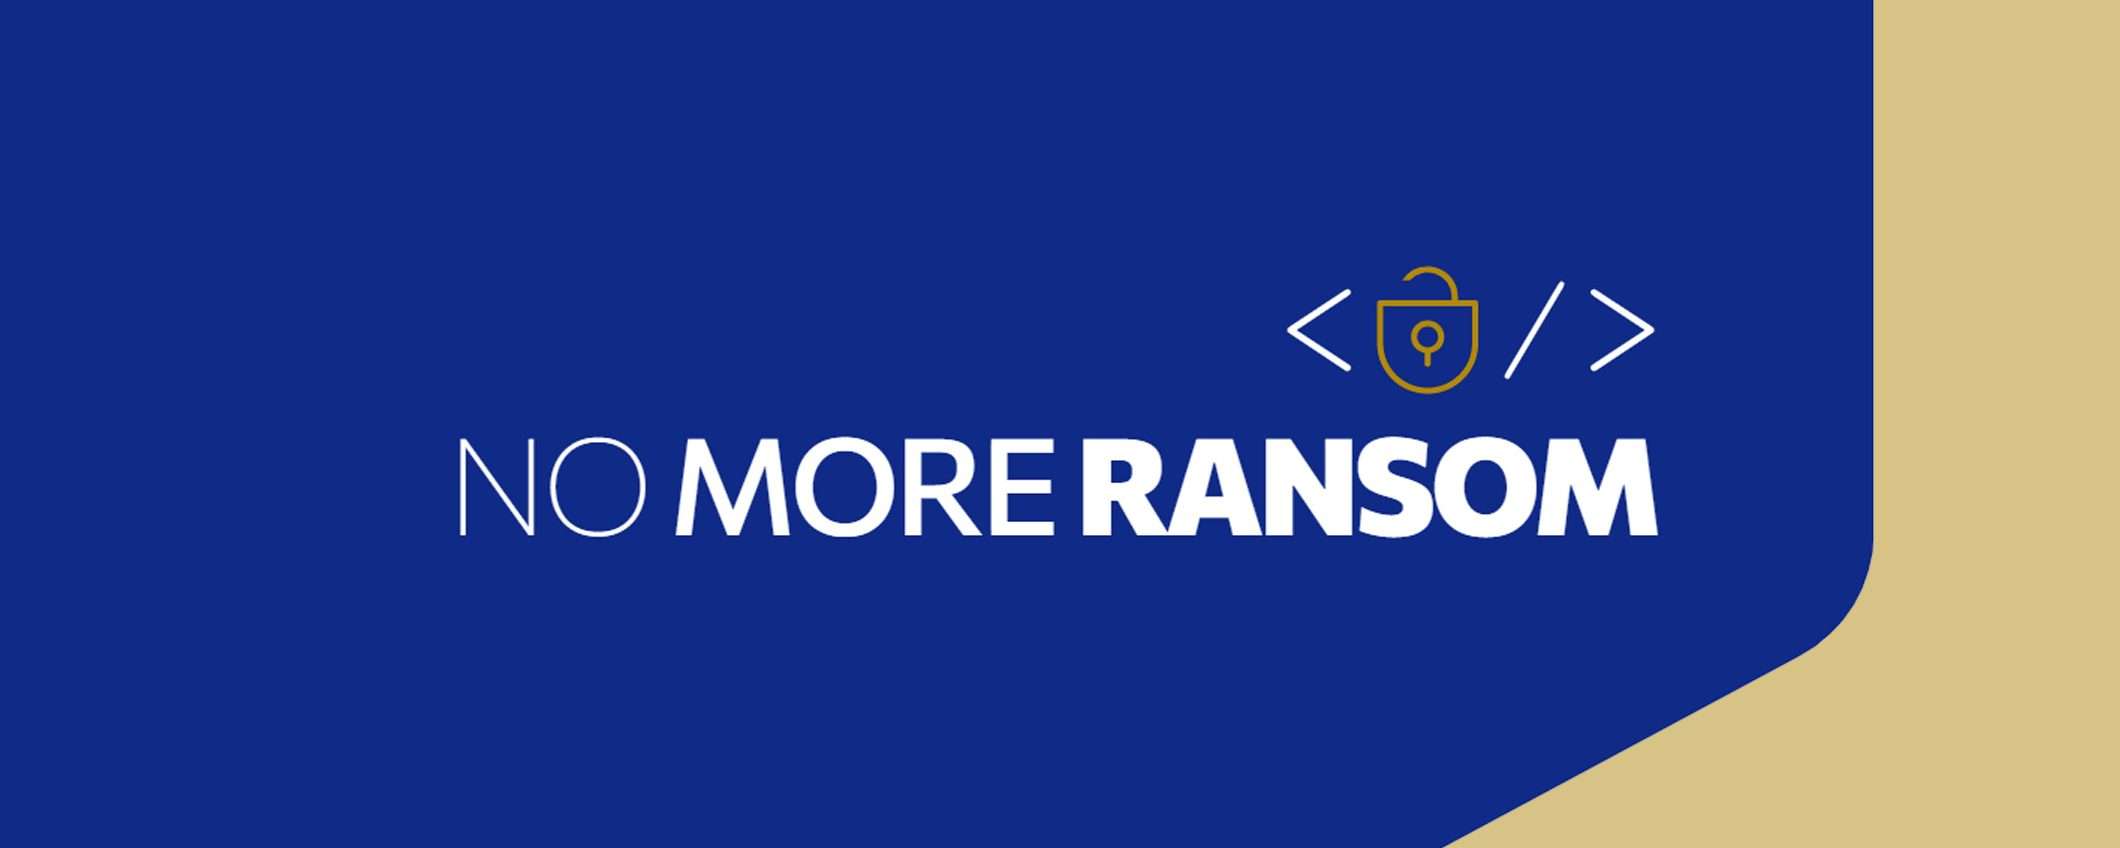 No More Ransom: sei anni di lotta ai ransomware